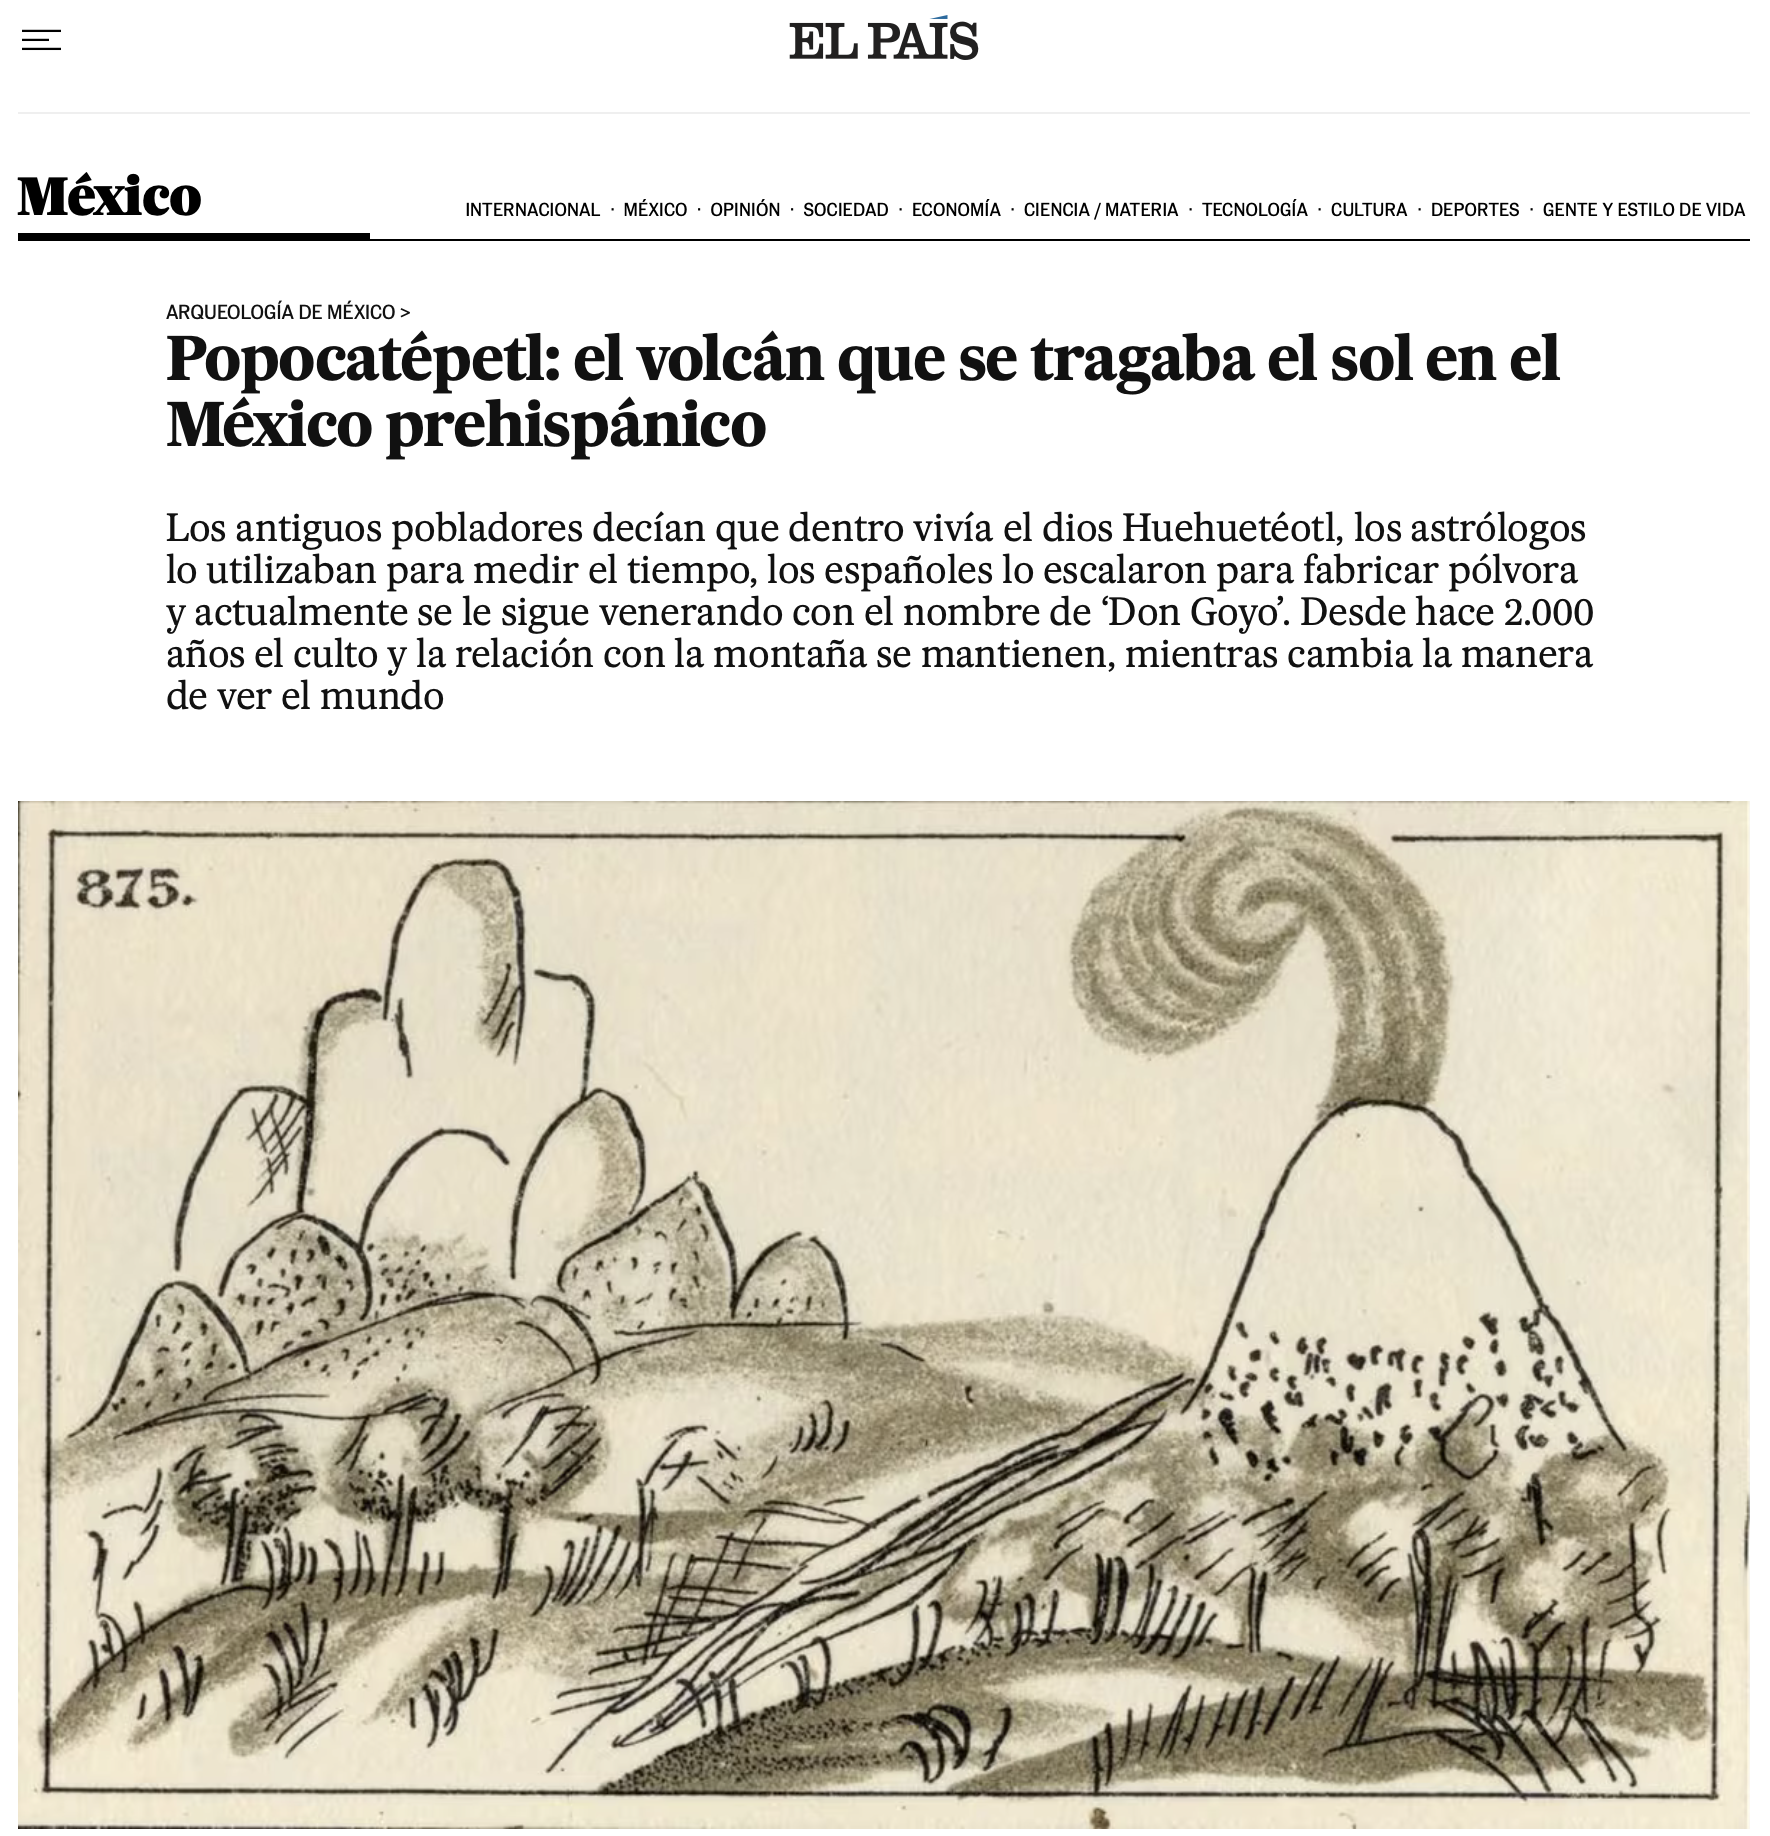 Popocatépetl: el volcán que se tragaba el sol en el México prehispánico